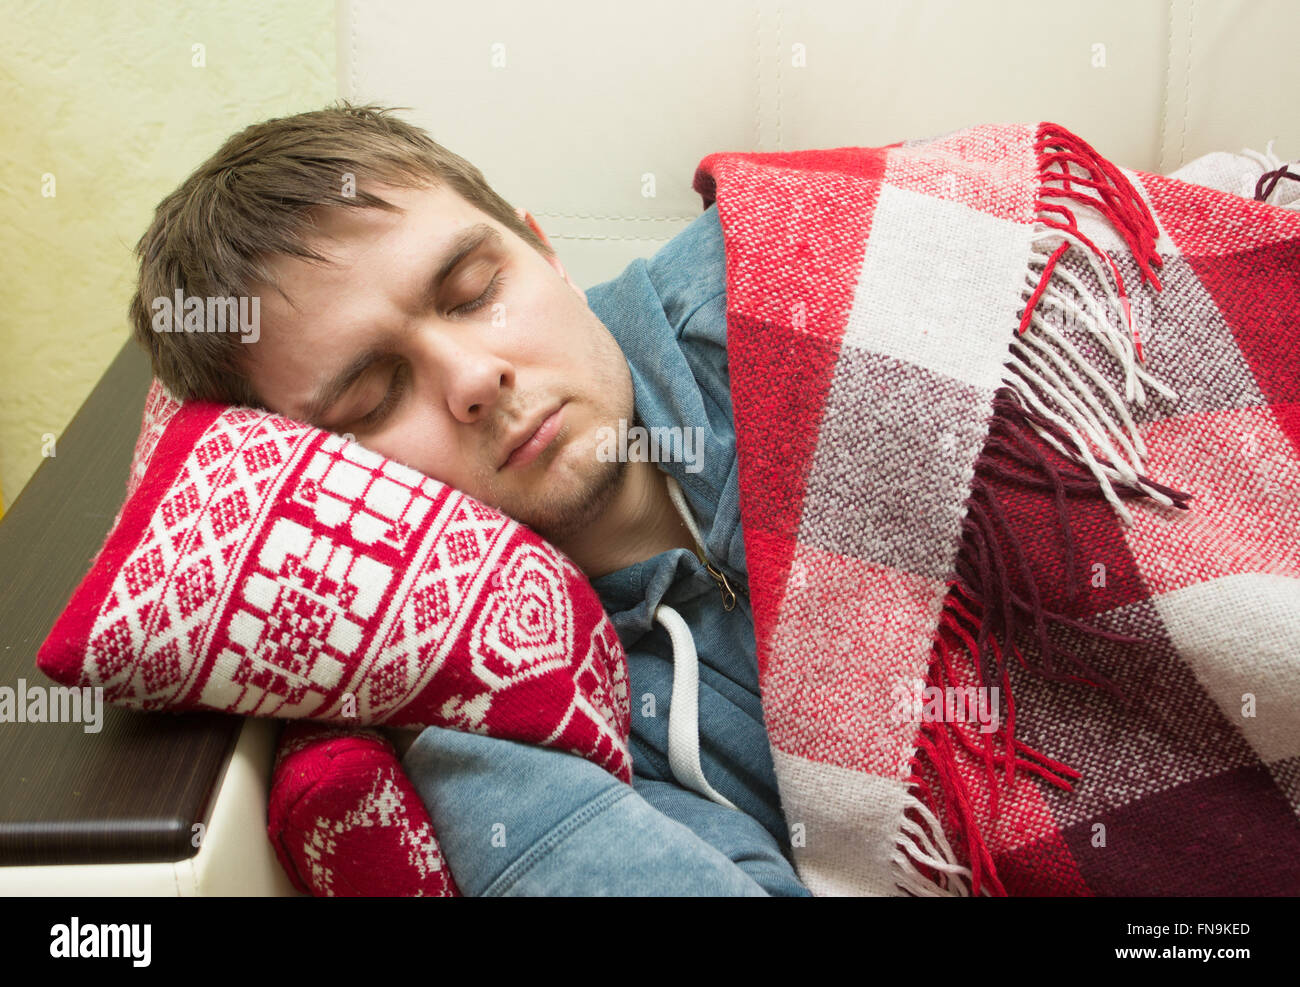 Mann mit Fieber auf dem Sofa schlafen Stockfotografie - Alamy